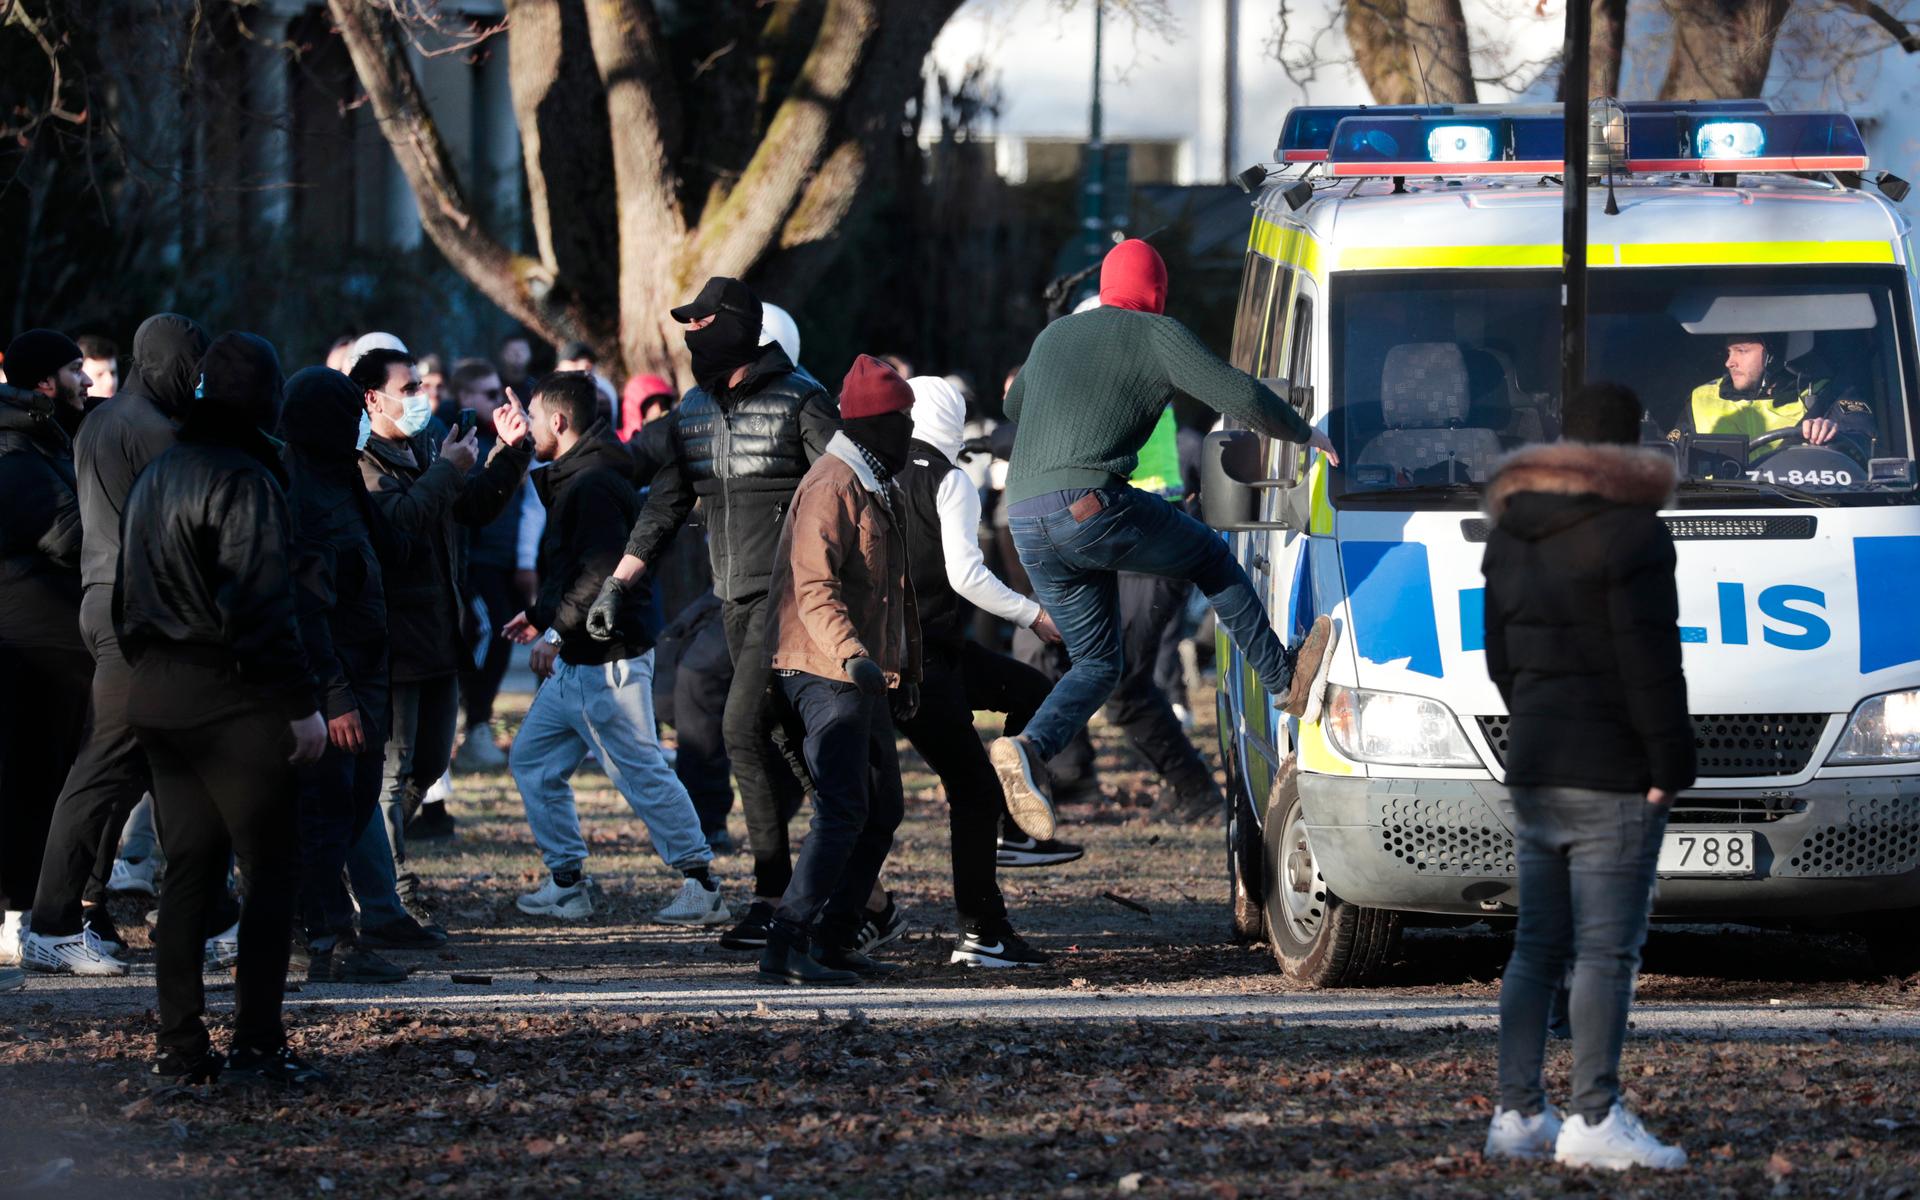 Motdemonstranter i konfrontation med polisen i Sveaparken i Örebro, där Rasmus Paludan, partiledare för det danska högerextrema partiet Stram kurs, har fått tillstånd för en sammankomst på långfredagen. 